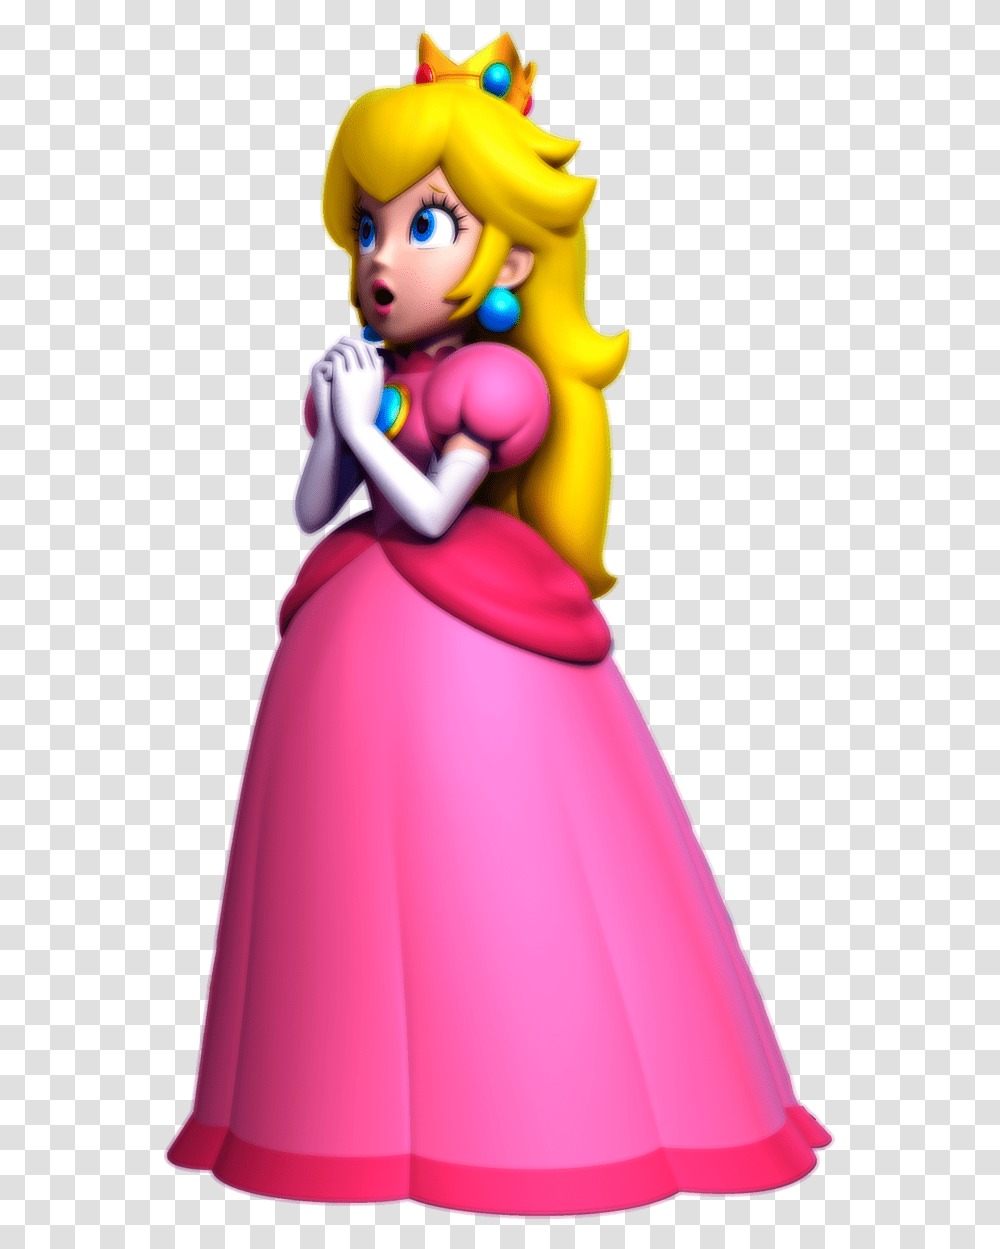 New Super Mario Bros Wii U Princess Peach Artwork, Female, Person, Dress Transparent Png